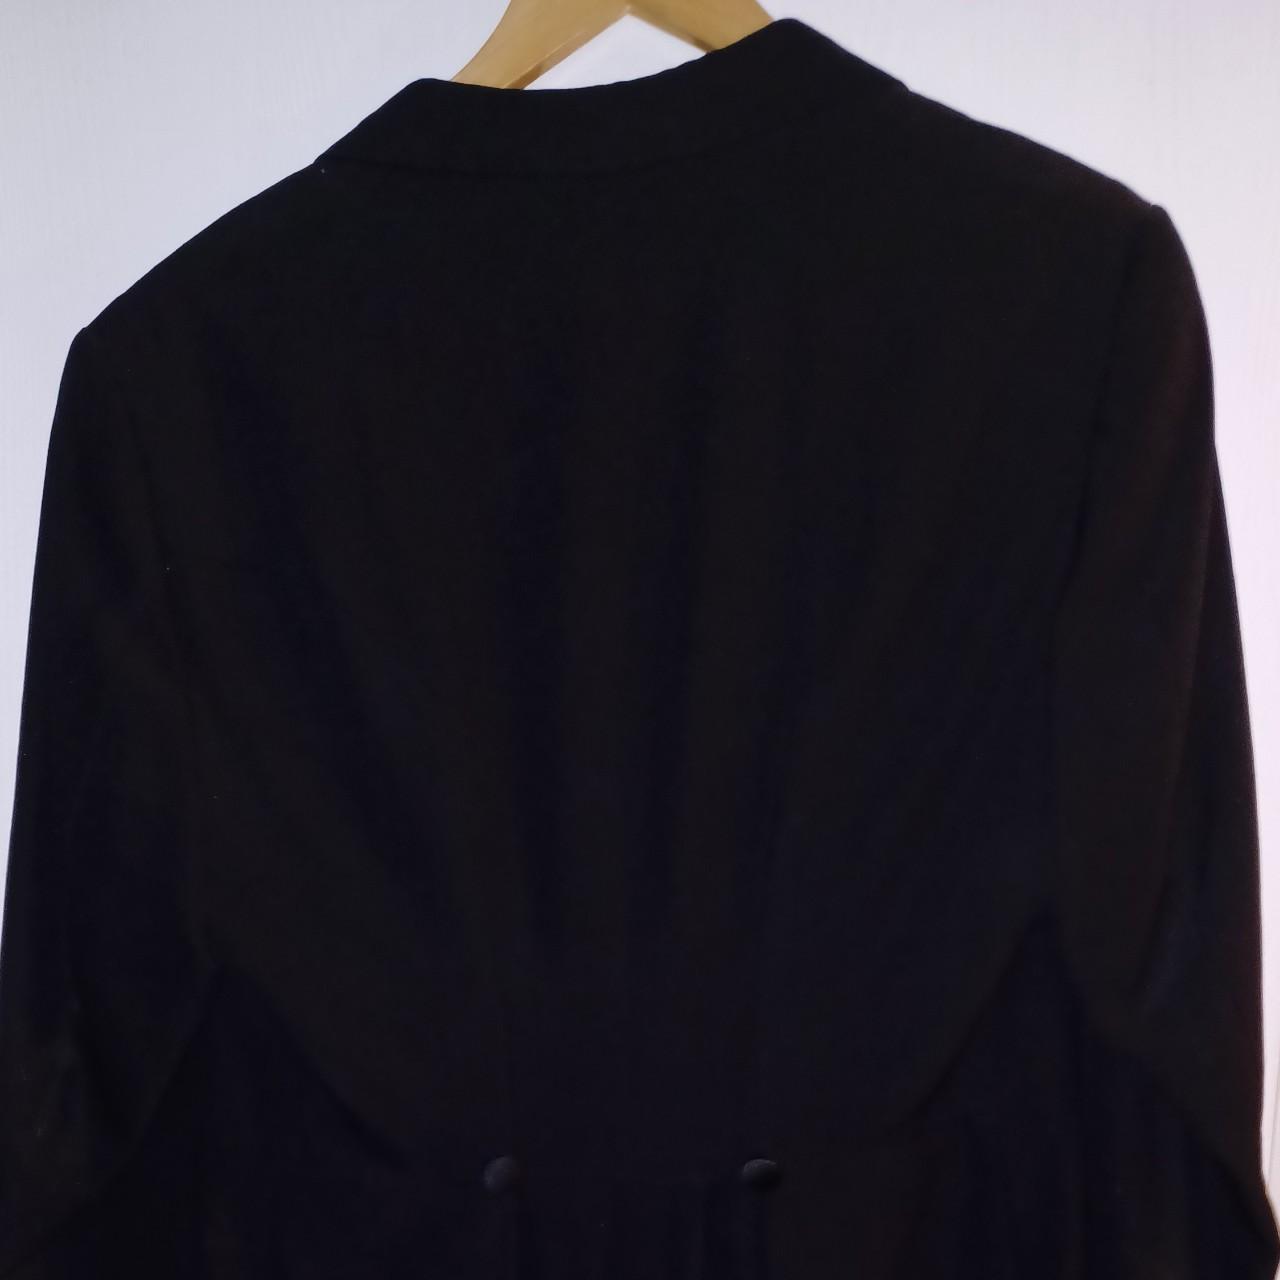 Unisex Tuxedo jacket in black - Depop